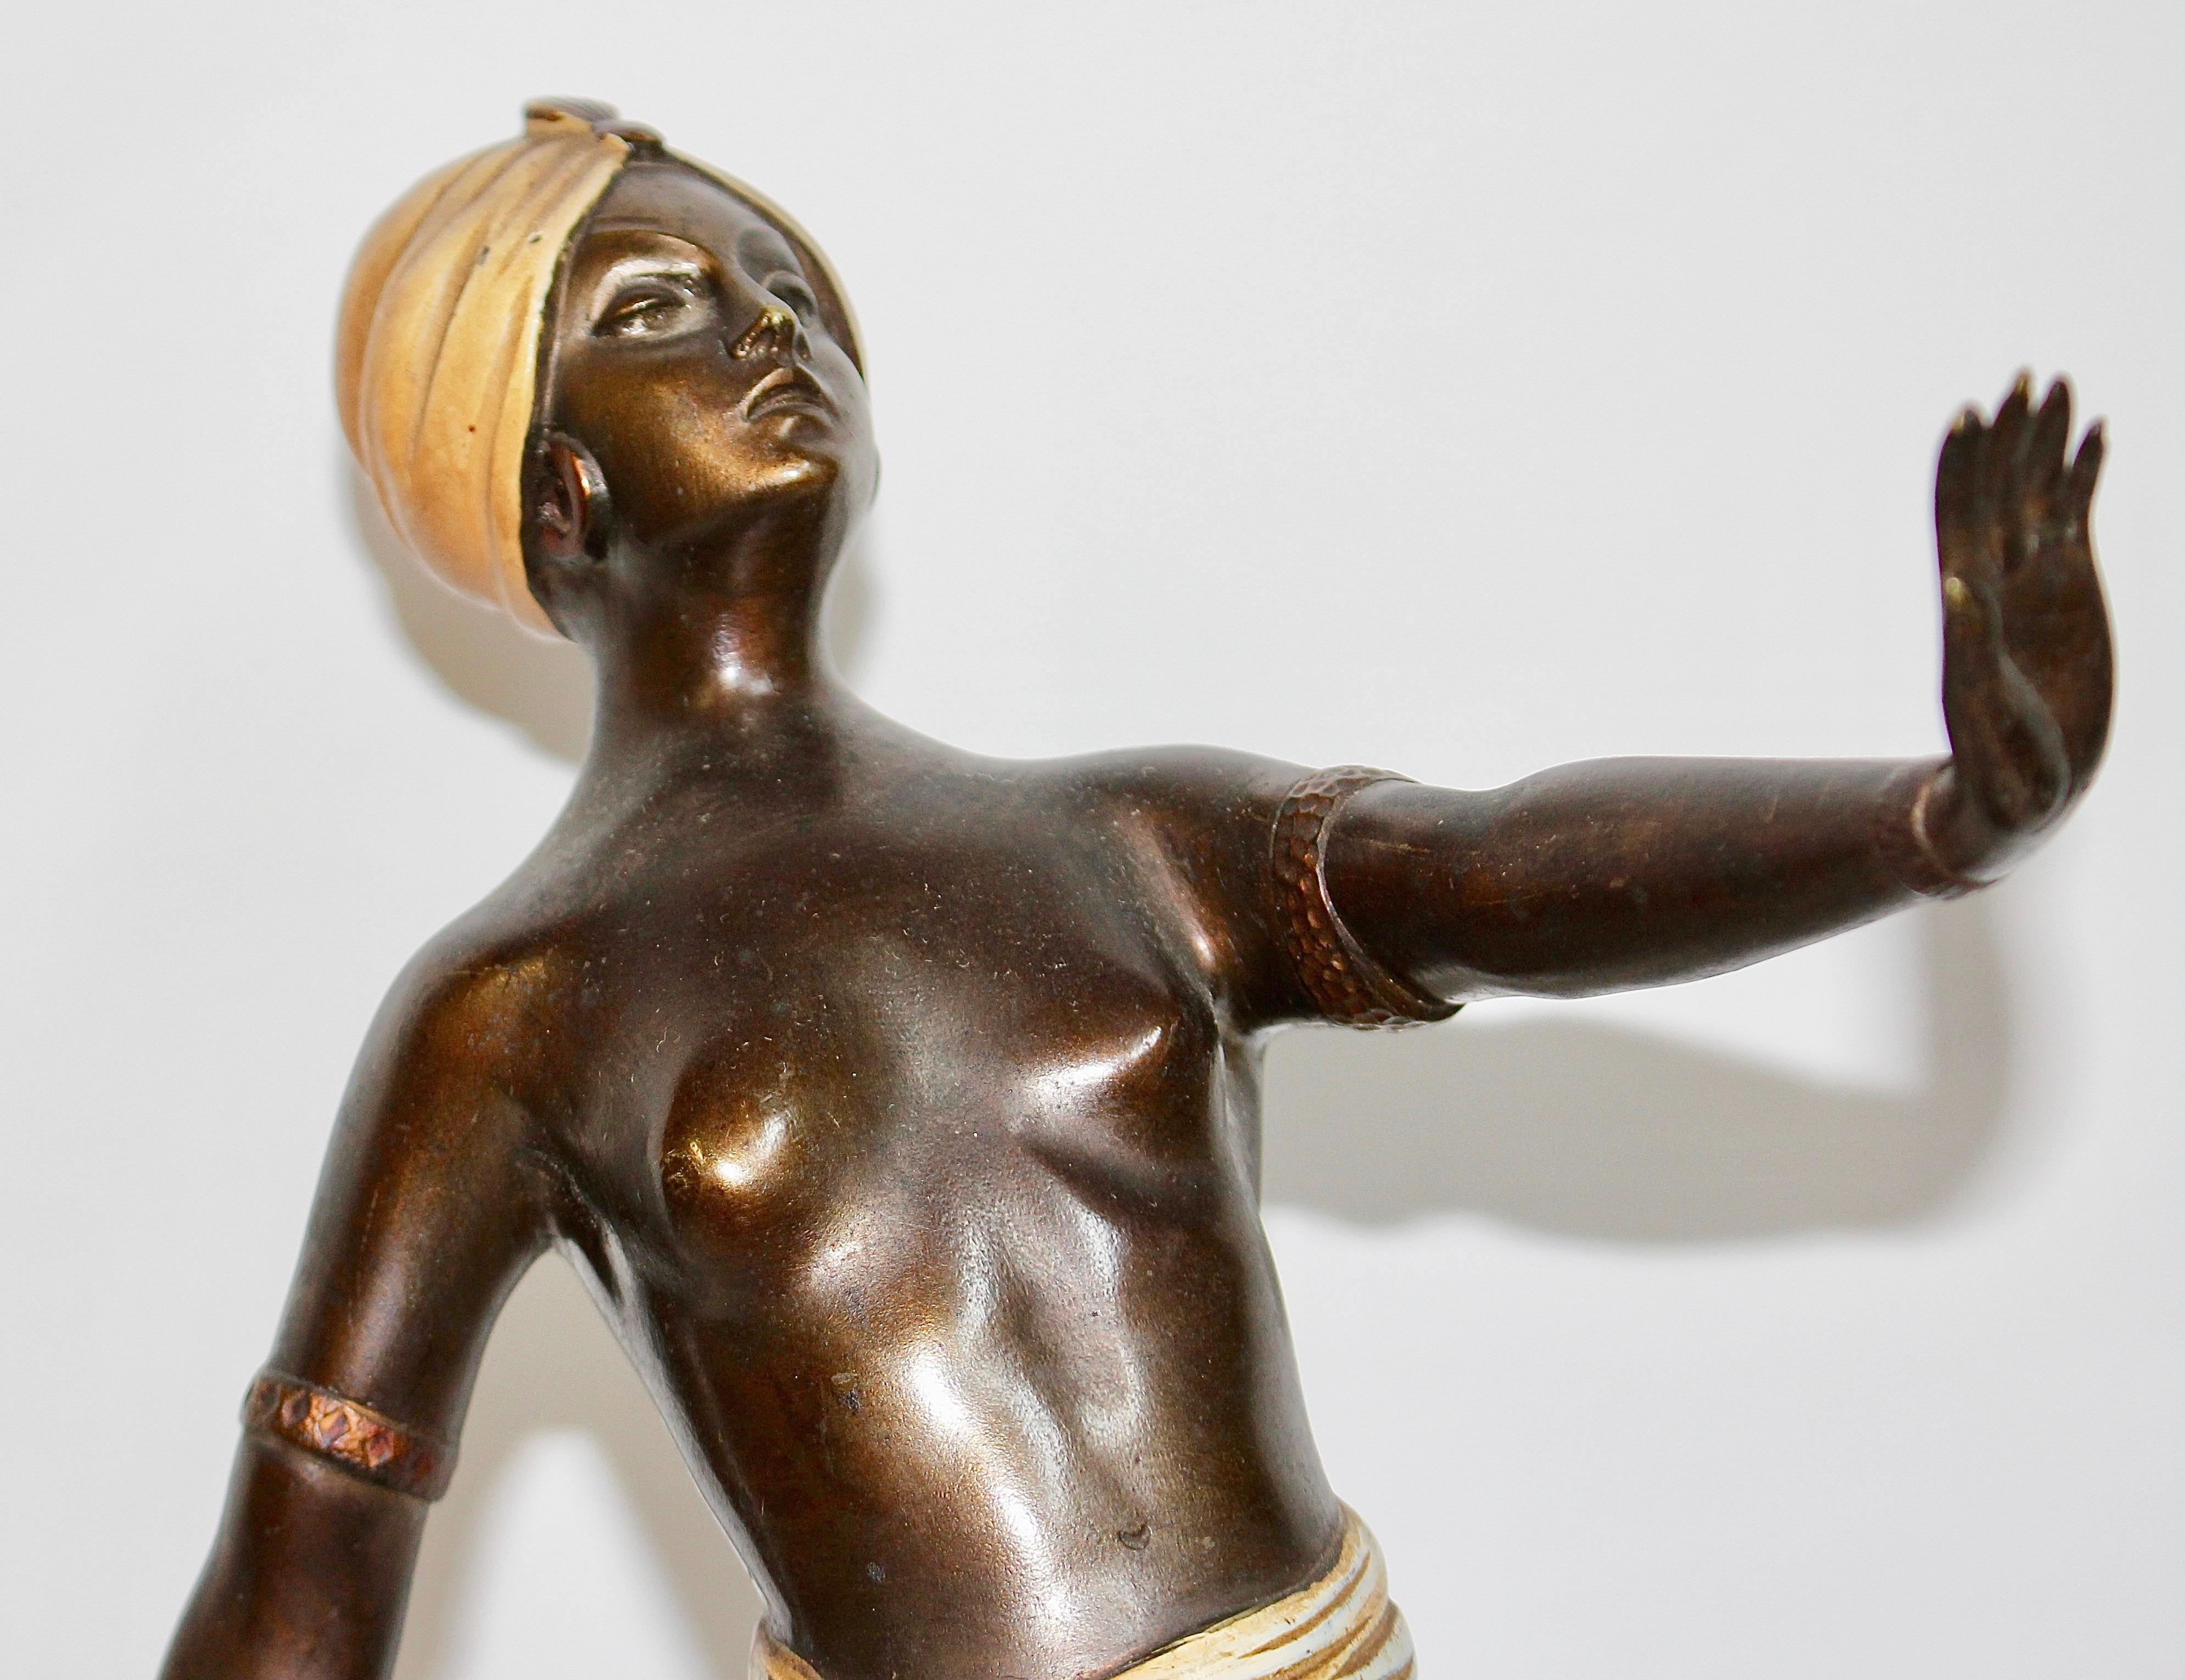 Antike Wiener Bronzeskulptur. Orientalische Nackttänzerin.

Bezaubernde und dekorative antike Bronzeskulptur.
Bemalte Bronze auf Marmorsockel.
Sehr detaillierte Qualität und Bemalung.